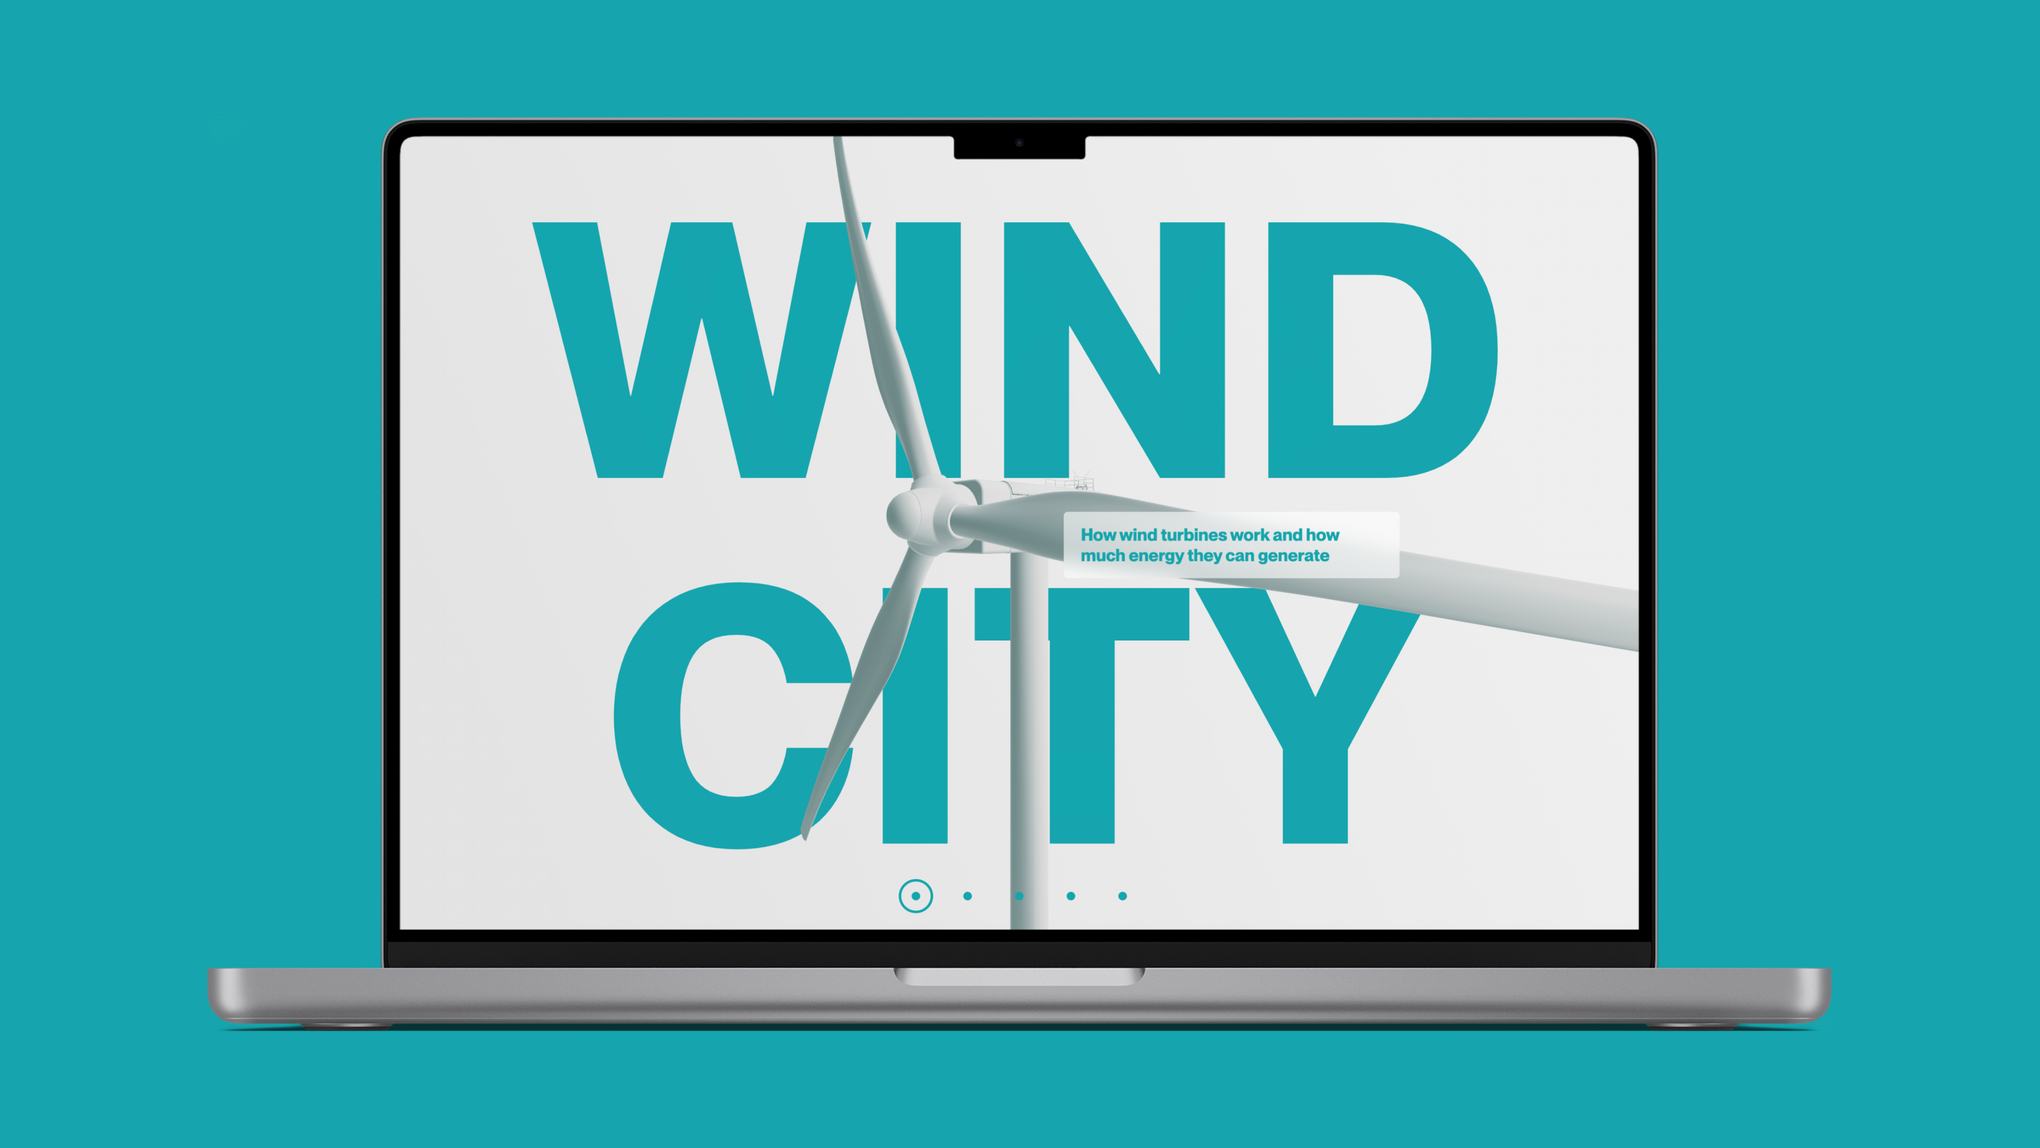 Der Startbildschirm von "Wind City" mit einem Windkraftwerk und dem Titel